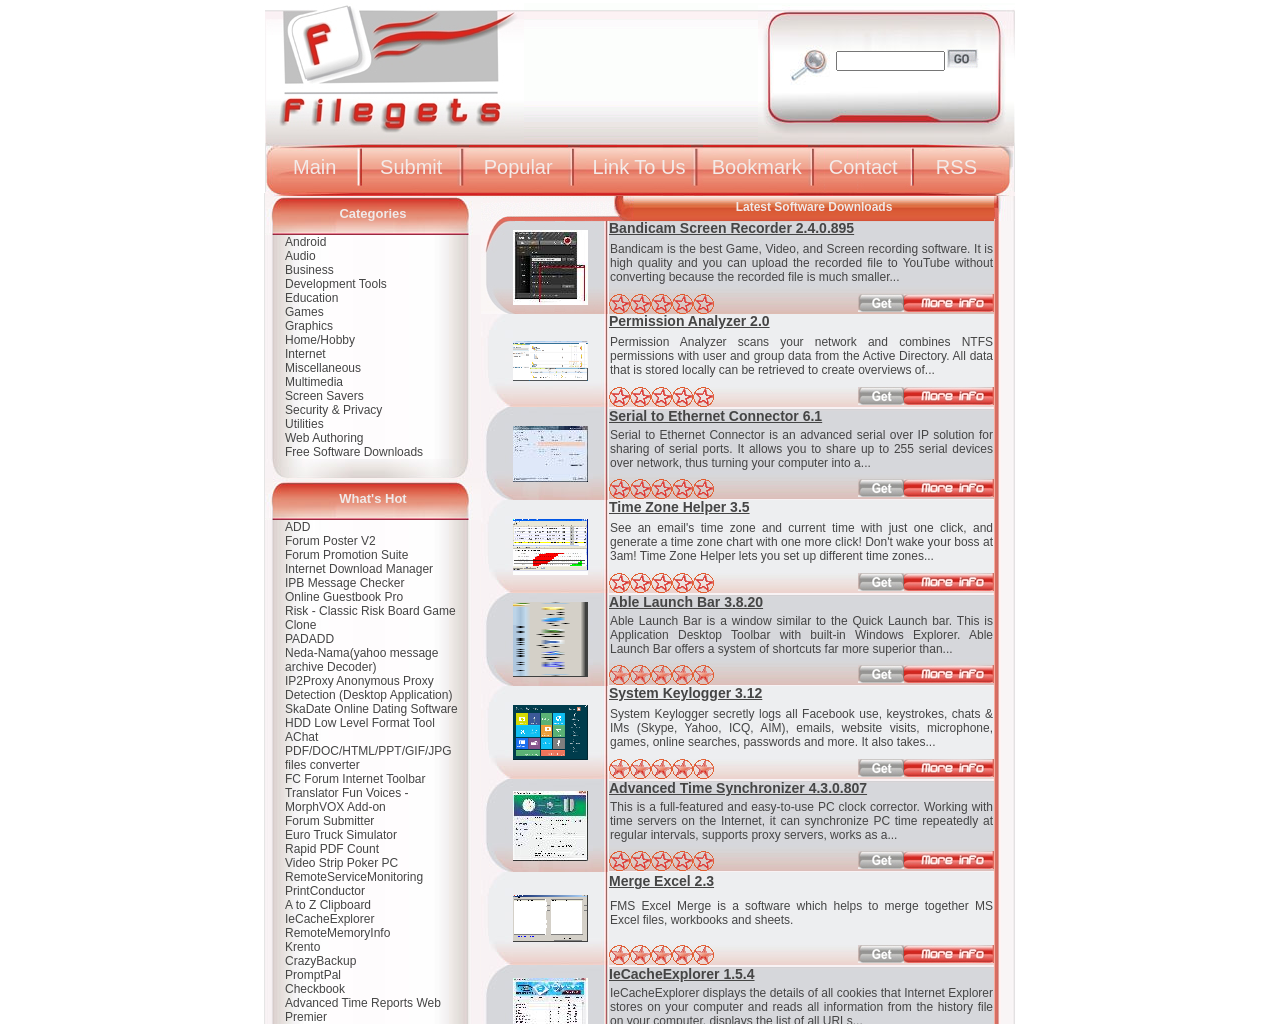 filegets.com